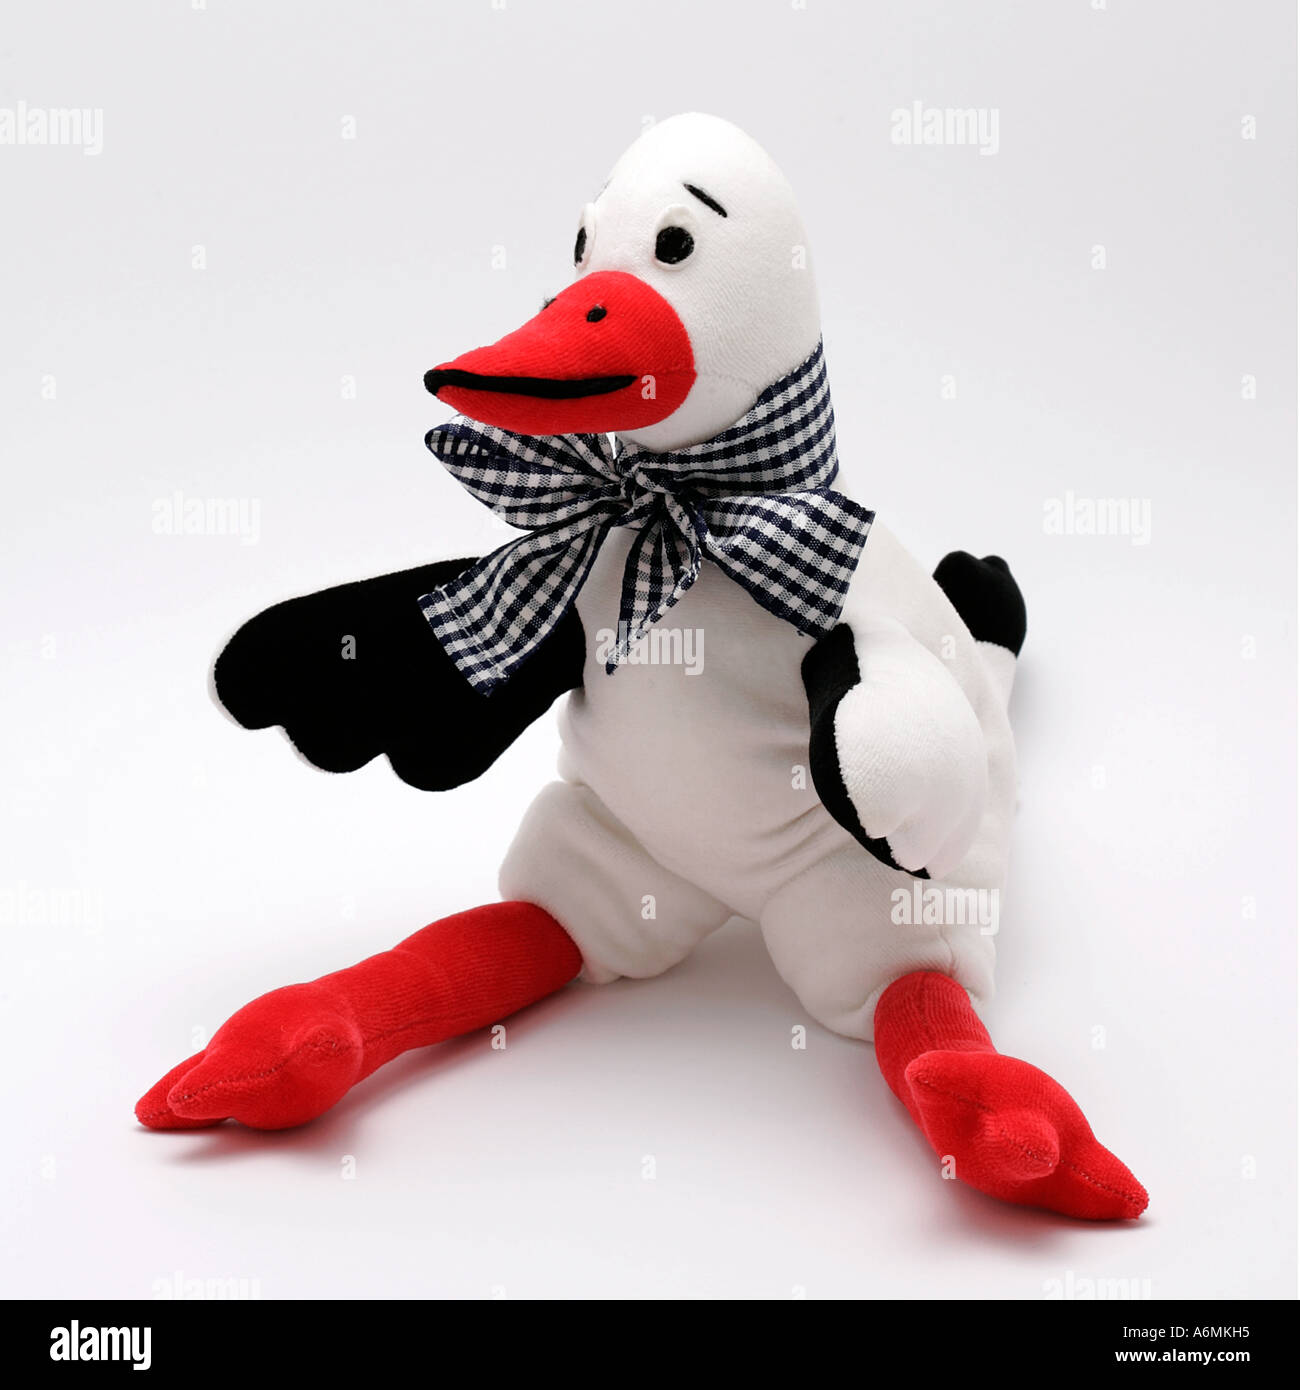 Stork toy figure animale enfants sweep jouet doudou jouet jeu de caractères peu bibelots knick knack jouer dally babiole Banque D'Images